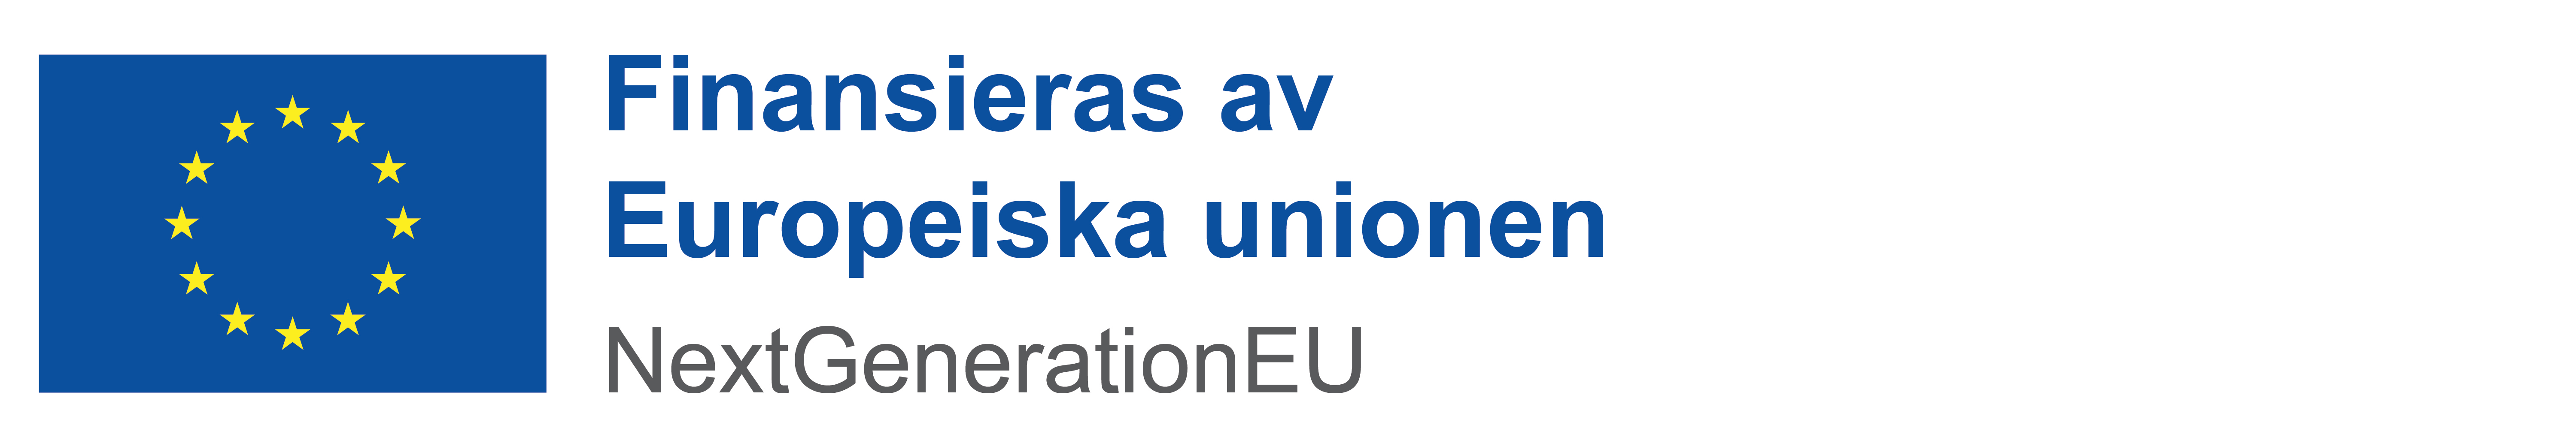 EU-flagga - Finansieras av Europeiska Unionen.